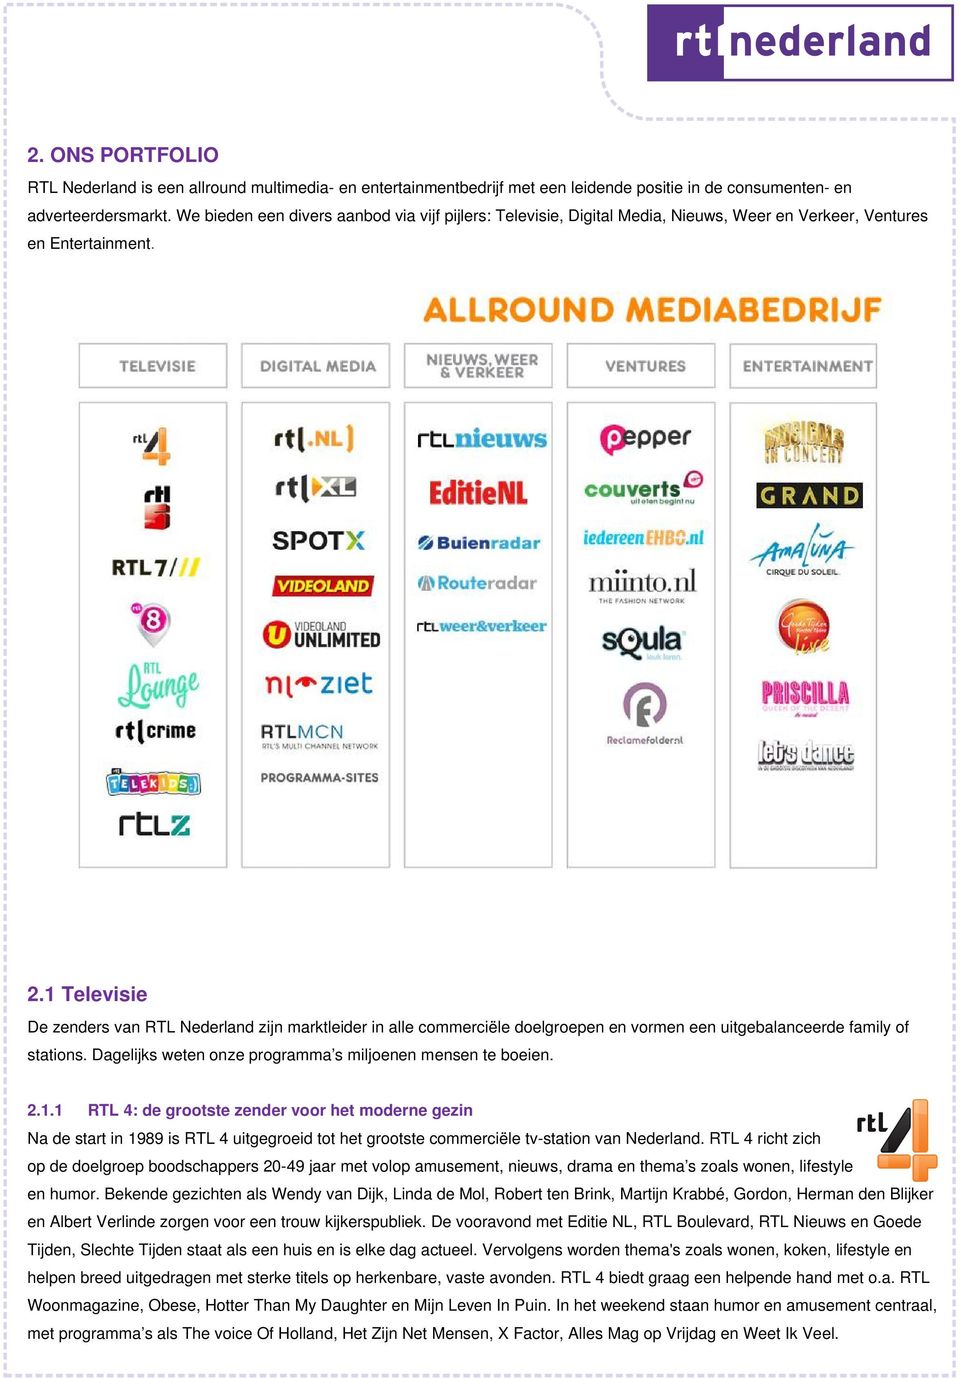 1 Televisie De zenders van RTL Nederland zijn marktleider in alle commerciële doelgroepen en vormen een uitgebalanceerde family of stations.